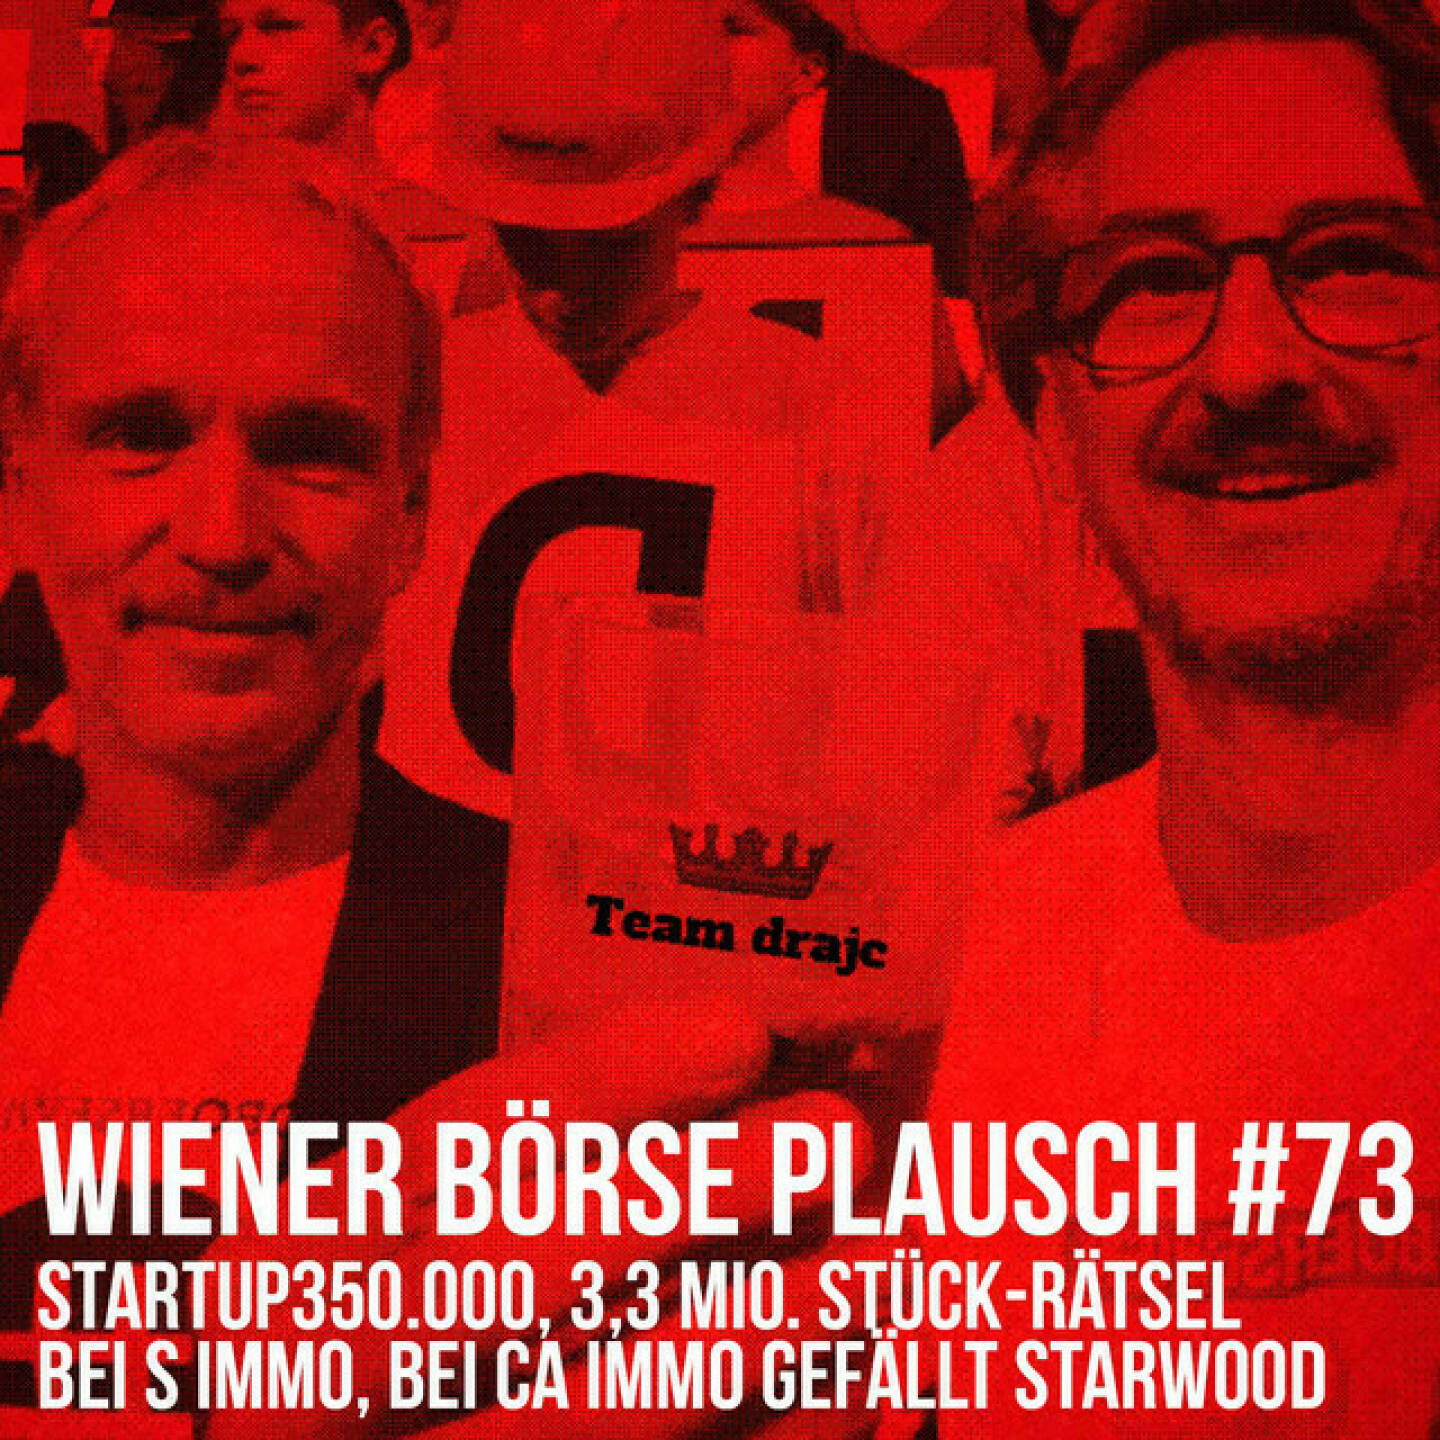 https://open.spotify.com/episode/6Y8OFQgSYAKYGUL0TJnYey
Wiener Börse Plausch #73: startup350.000, 3,3 Mio. Stück-Rätsel bei S Immo, bei CA Immo gefällt Starwood - <p>Team drajc, das sind die Börse Social Network Eigentümer Christian Drastil und Josef Chladek, quatscht im Wiener Börse Plausch #74 über einen newslosen Tag, daher haben wir uns die Themen selbst gemacht: Bei startup300 geht es um rund 350.000 Stück, bei der S Immo rätseln wir über 3,3 Mio. Stück, bei CA Immo gefällt Starwood, unser wikifolio ist dank der Wiener Börse in einem Dachwikifolio die Nr. 1.</p><br/><p>Die Februar-Folgen vom Wiener Börse Plausch sind präsentiert von Wienerberger, CEO Heimo Scheuch hat sich im Q4 ebenfalls unter die Podcaster gemischt: <a href=https://open.spotify.com/show/5D4Gz8bpAYNAI6tg7H695E rel=nofollow>https://open.spotify.com/show/5D4Gz8bpAYNAI6tg7H695E</a> . Co-Presenter ist UBM, siehe auch die überarbeitete <a href=https://boersenradio.at rel=nofollow>https://boersenradio.at</a></p><br/><p>Risikohinweis: Die hier veröffentlichten Gedanken sind weder als Empfehlung noch als ein Angebot oder eine Aufforderung zum An- oder Verkauf von Finanzinstrumenten zu verstehen und sollen auch nicht so verstanden werden. Sie stellen lediglich die persönliche Meinung der Podcastmacher dar. Der Handel mit Finanzprod ukten unterliegt einem Risiko. Sie können Ihr eingesetztes Kapital verlieren.</p>